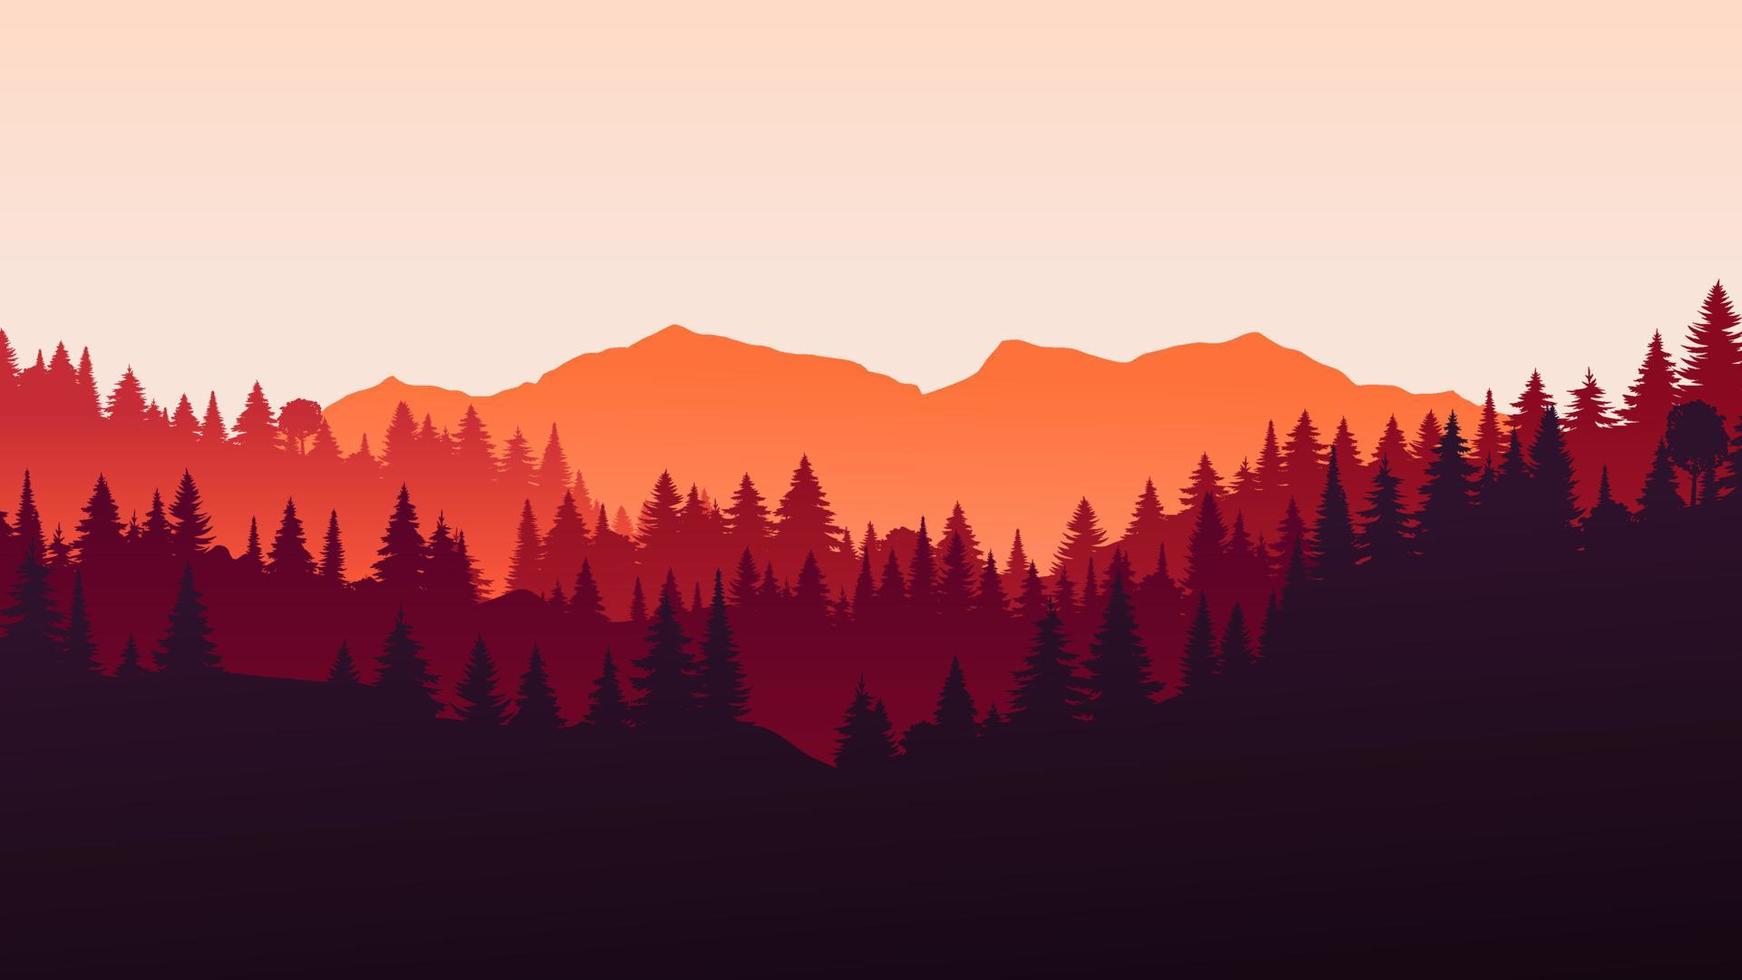 vector paisagem horizontal vermelha com nevoeiro, floresta, abeto, abeto e luz solar da manhã. ilustração de temporada de outono da silhueta de vista panorâmica, névoa e montanhas laranja. cair árvores. fogo na floresta.